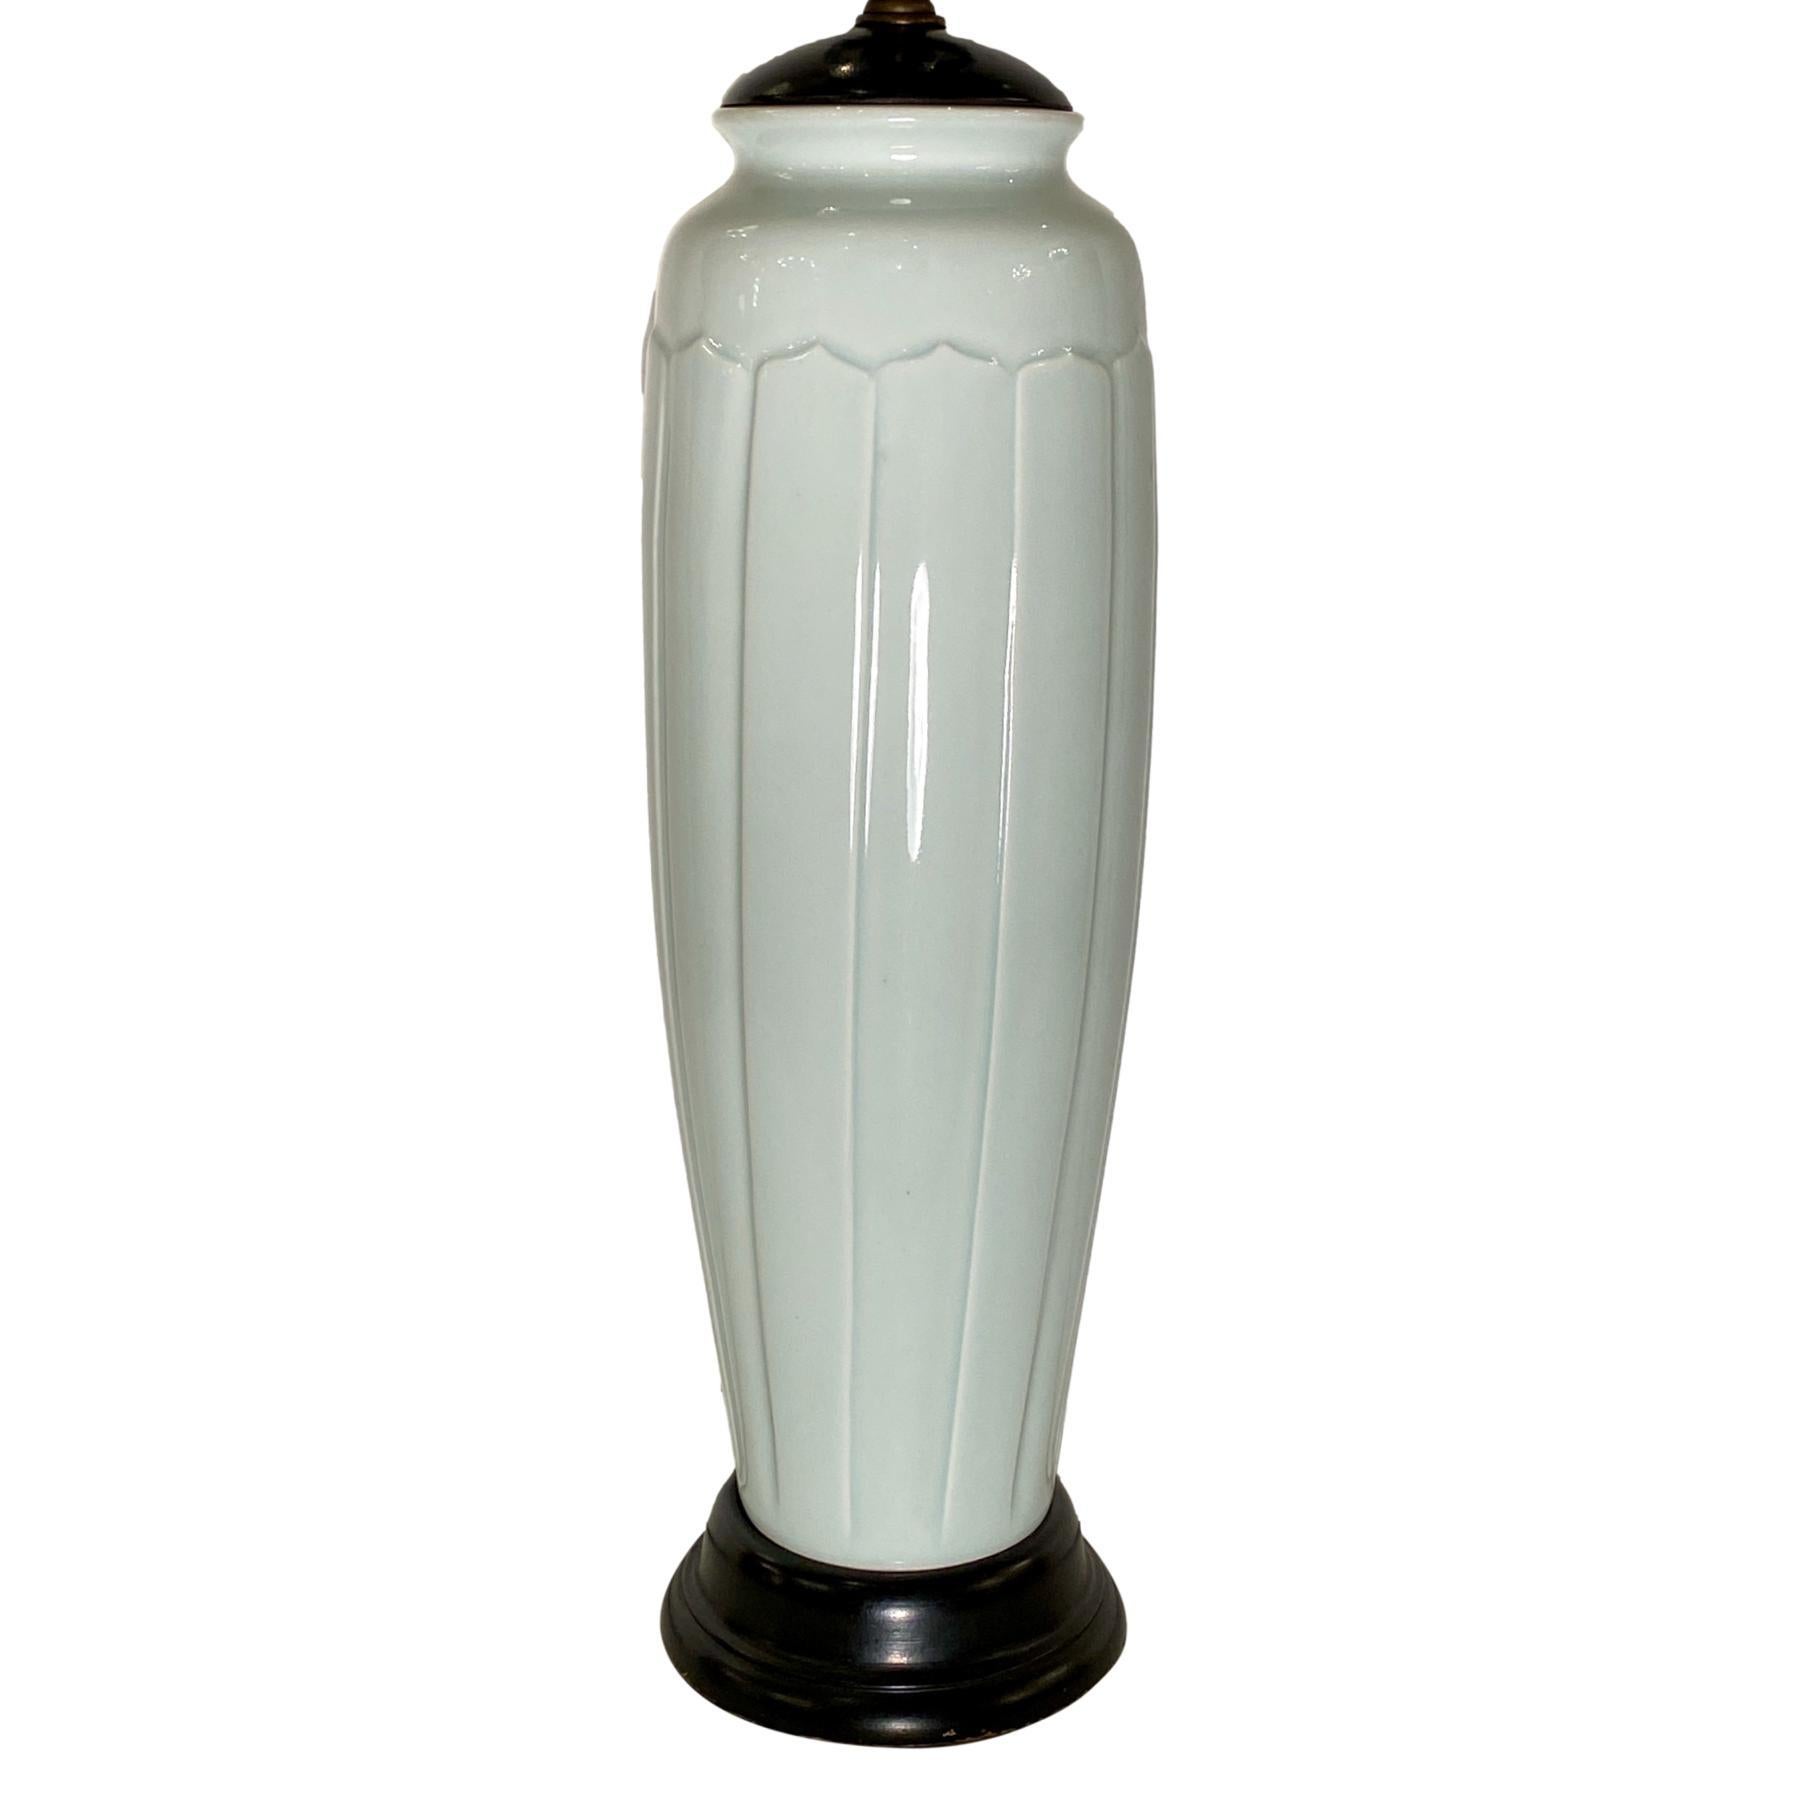 Eine französische Porzellan-Tischlampe aus den 1940er Jahren mit Holzsockel.

Abmessungen:
Höhe des Körpers: 16,5